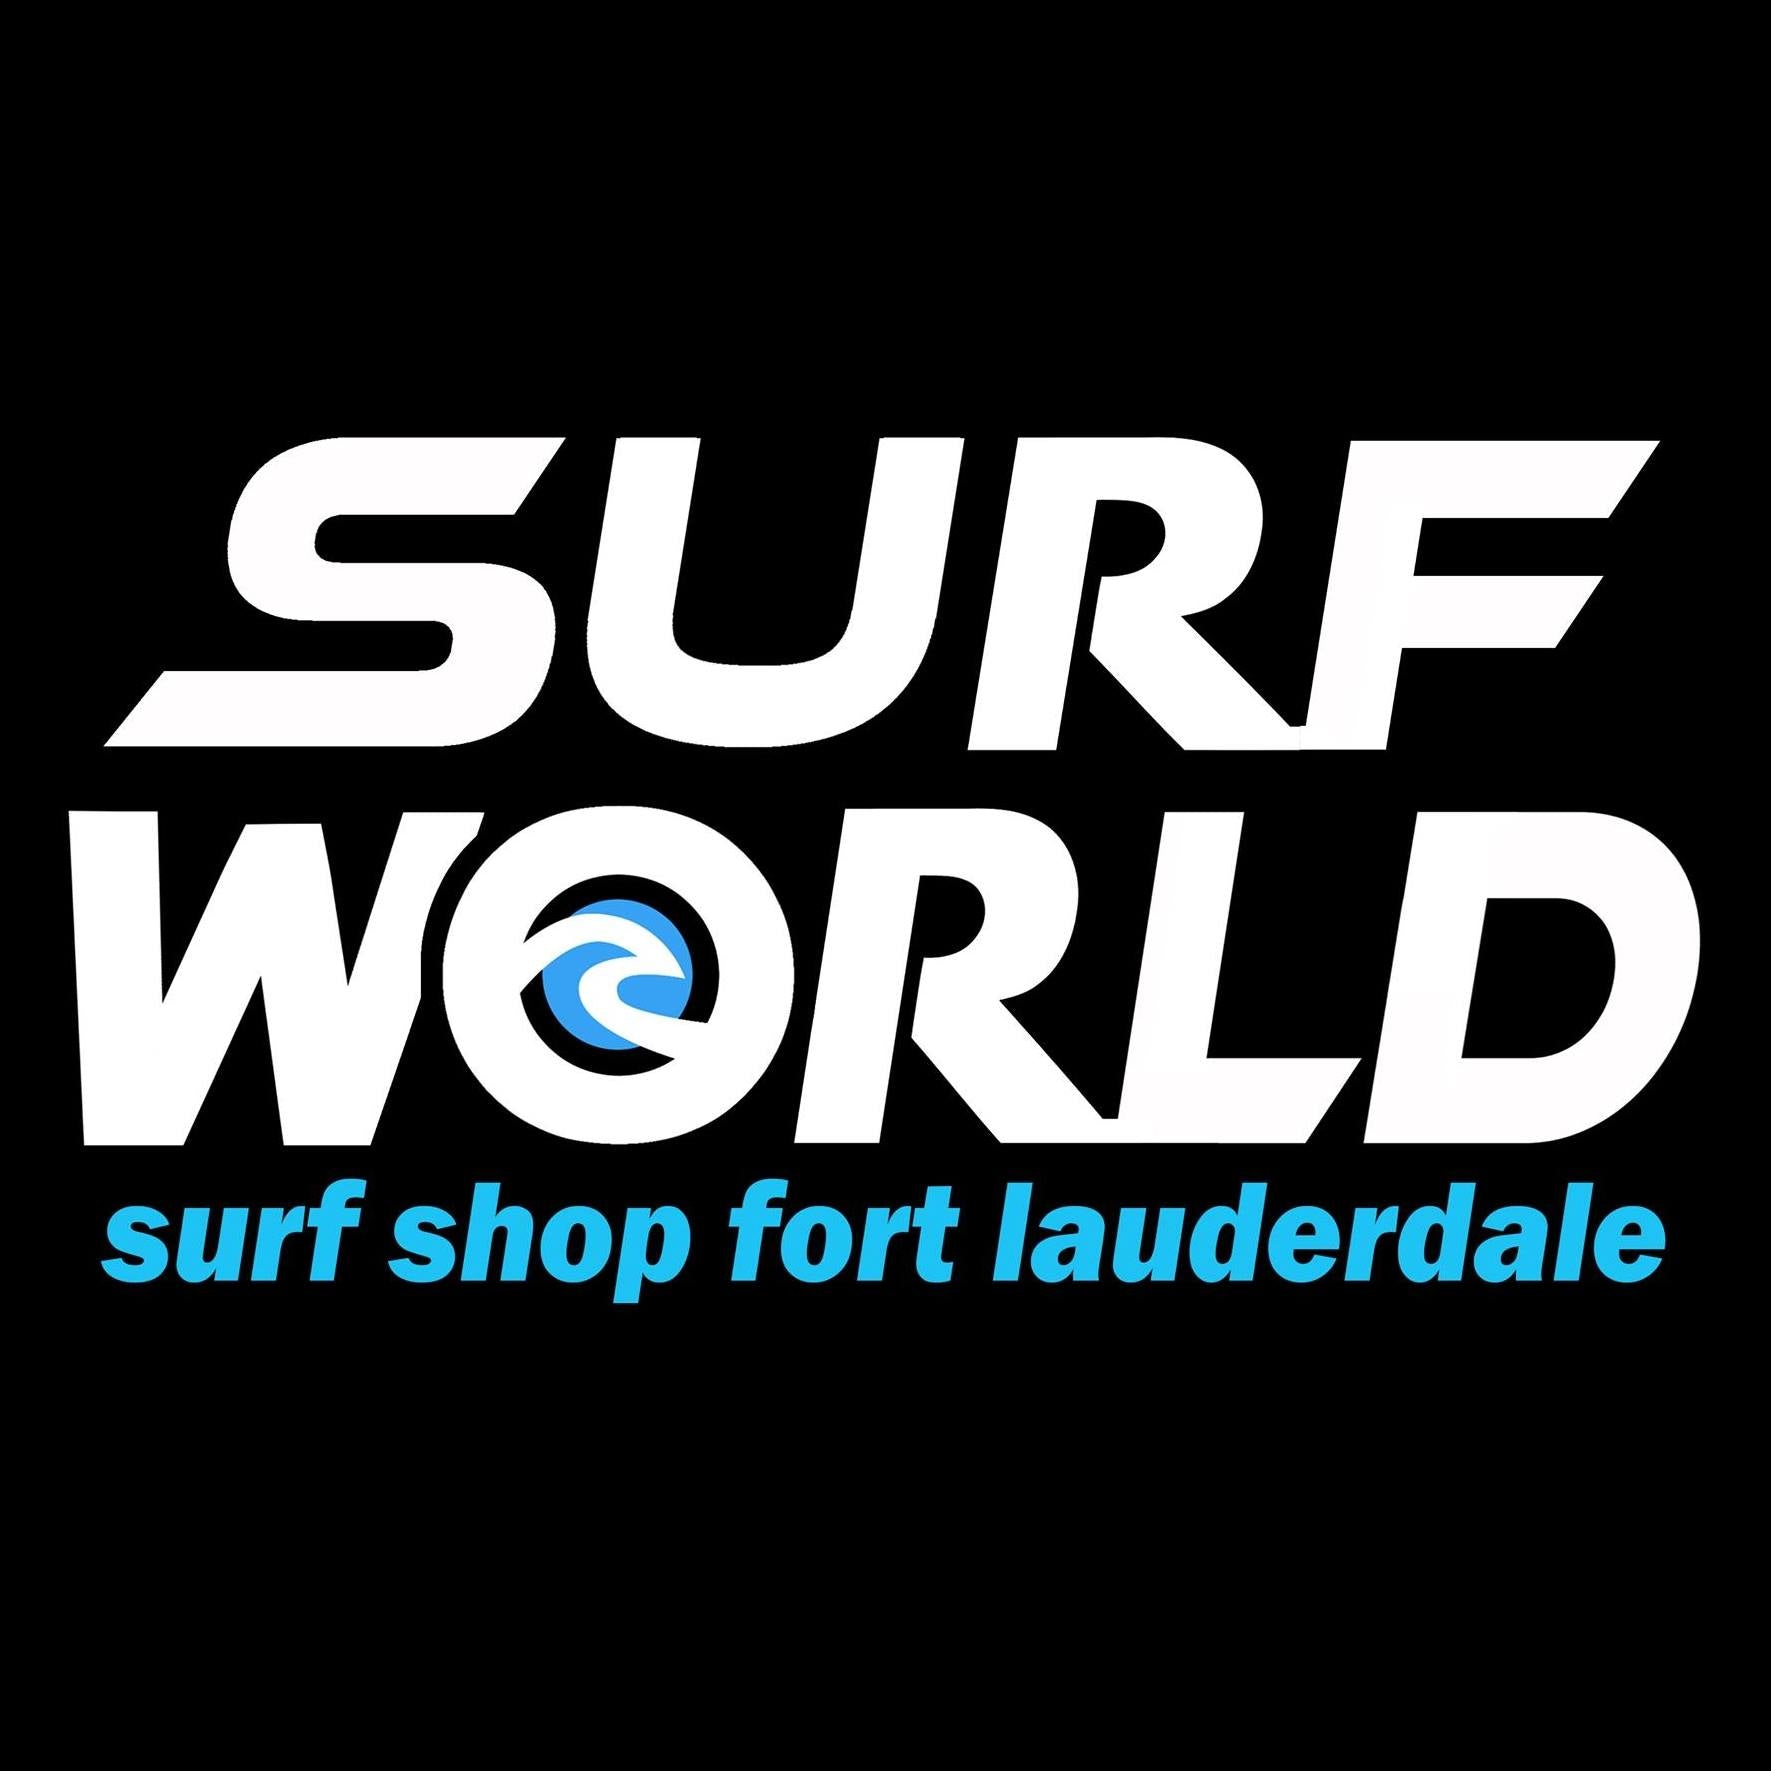 SURF WORLD SURF SHOP Fort Lauderdale - SURF - SKATE - SUP- FASHION